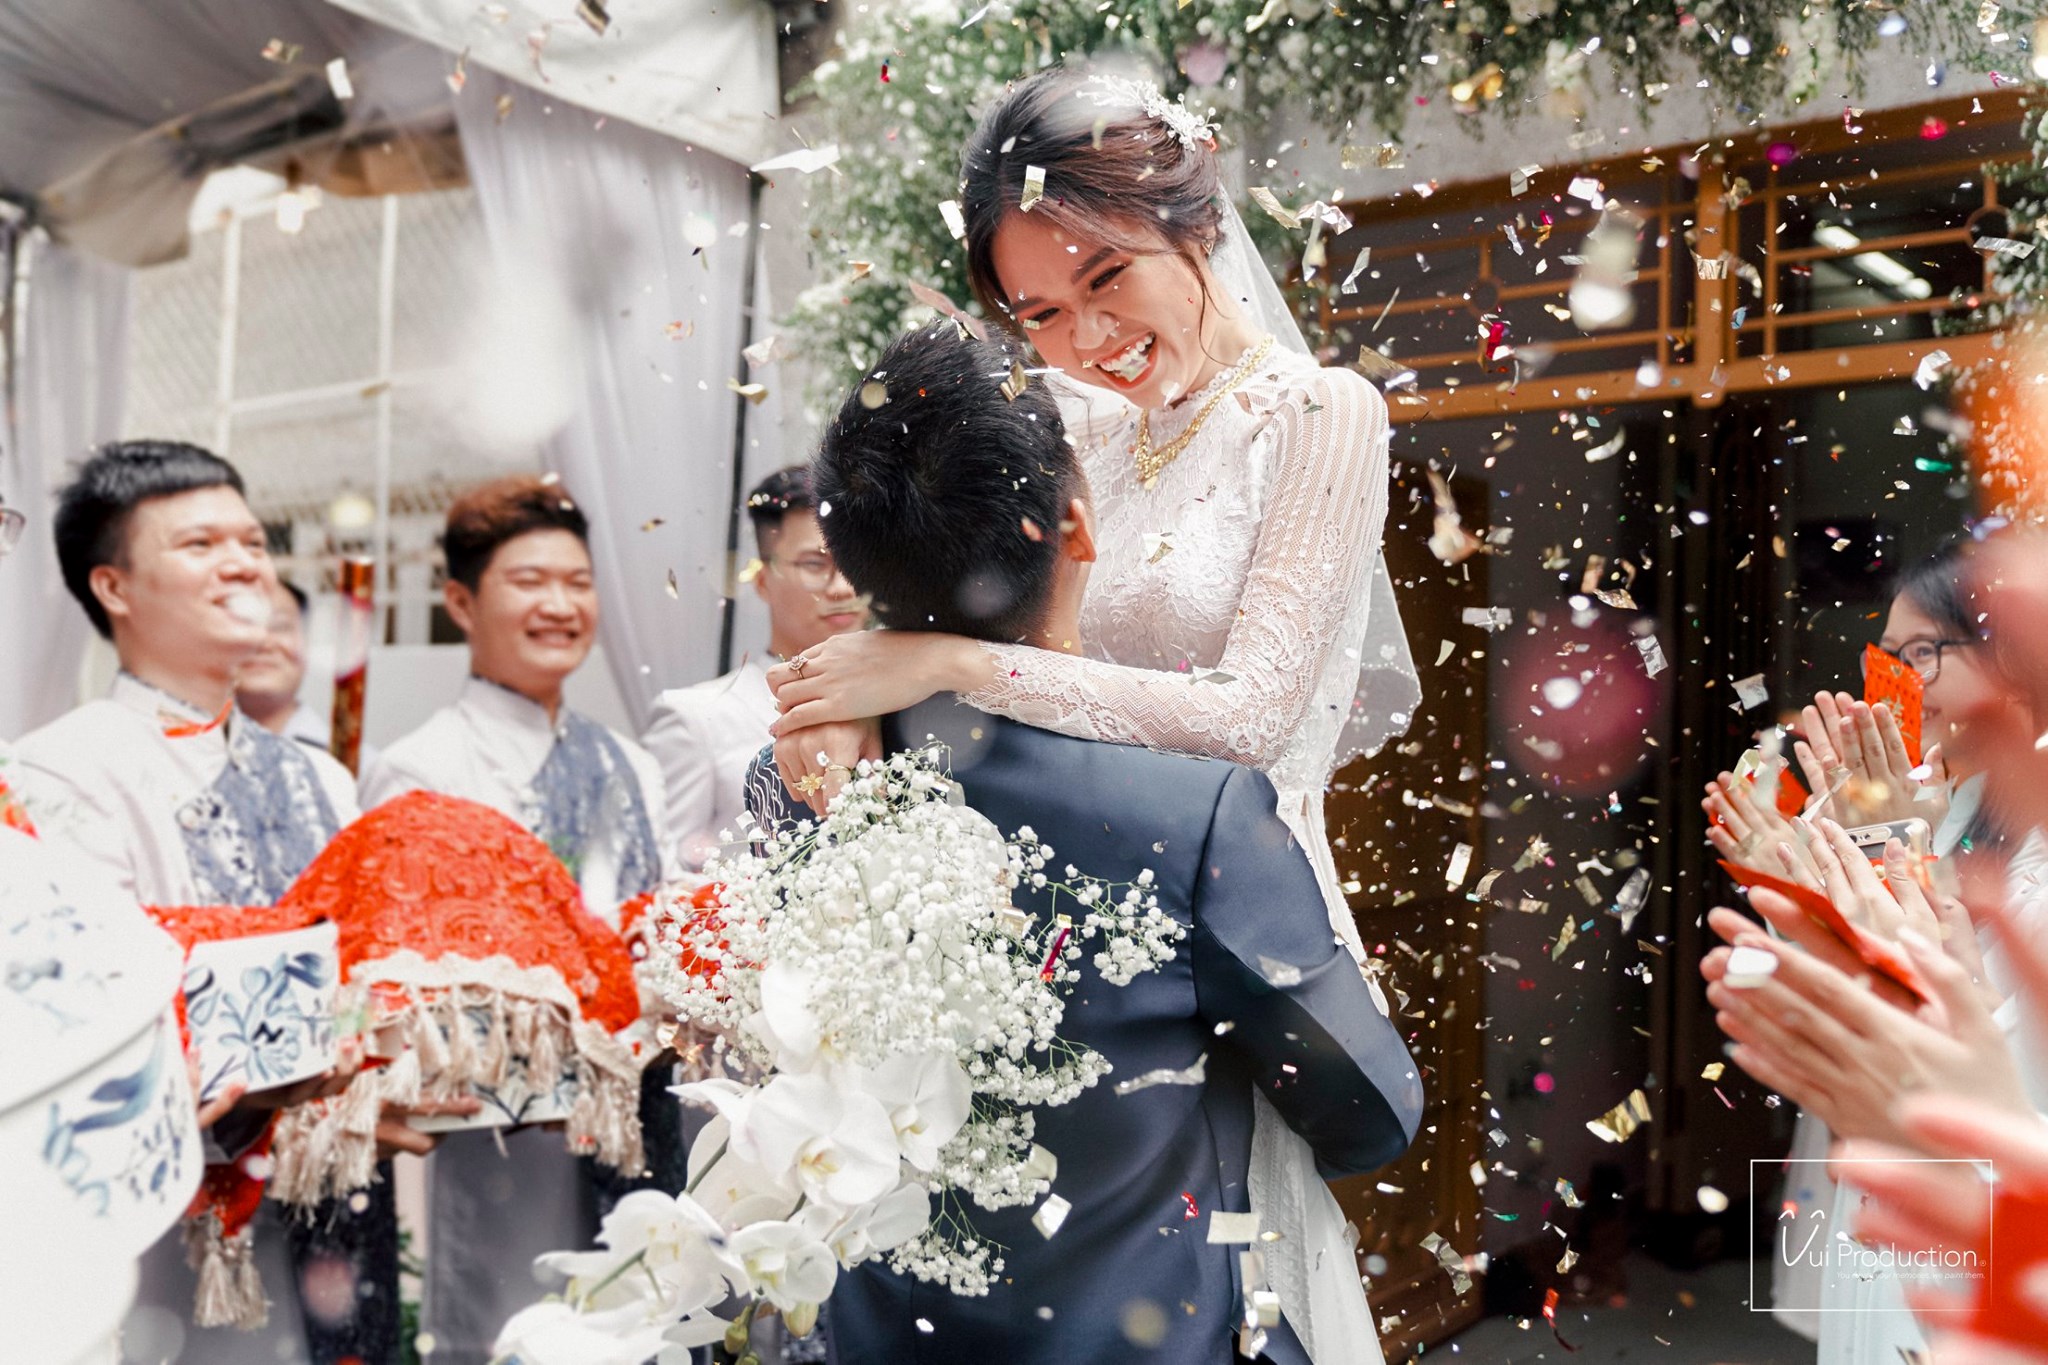 Xếp hạng 10 studio chụp ảnh cưới đẹp nhất Thành phố Hồ Chí Minh - Vui Production